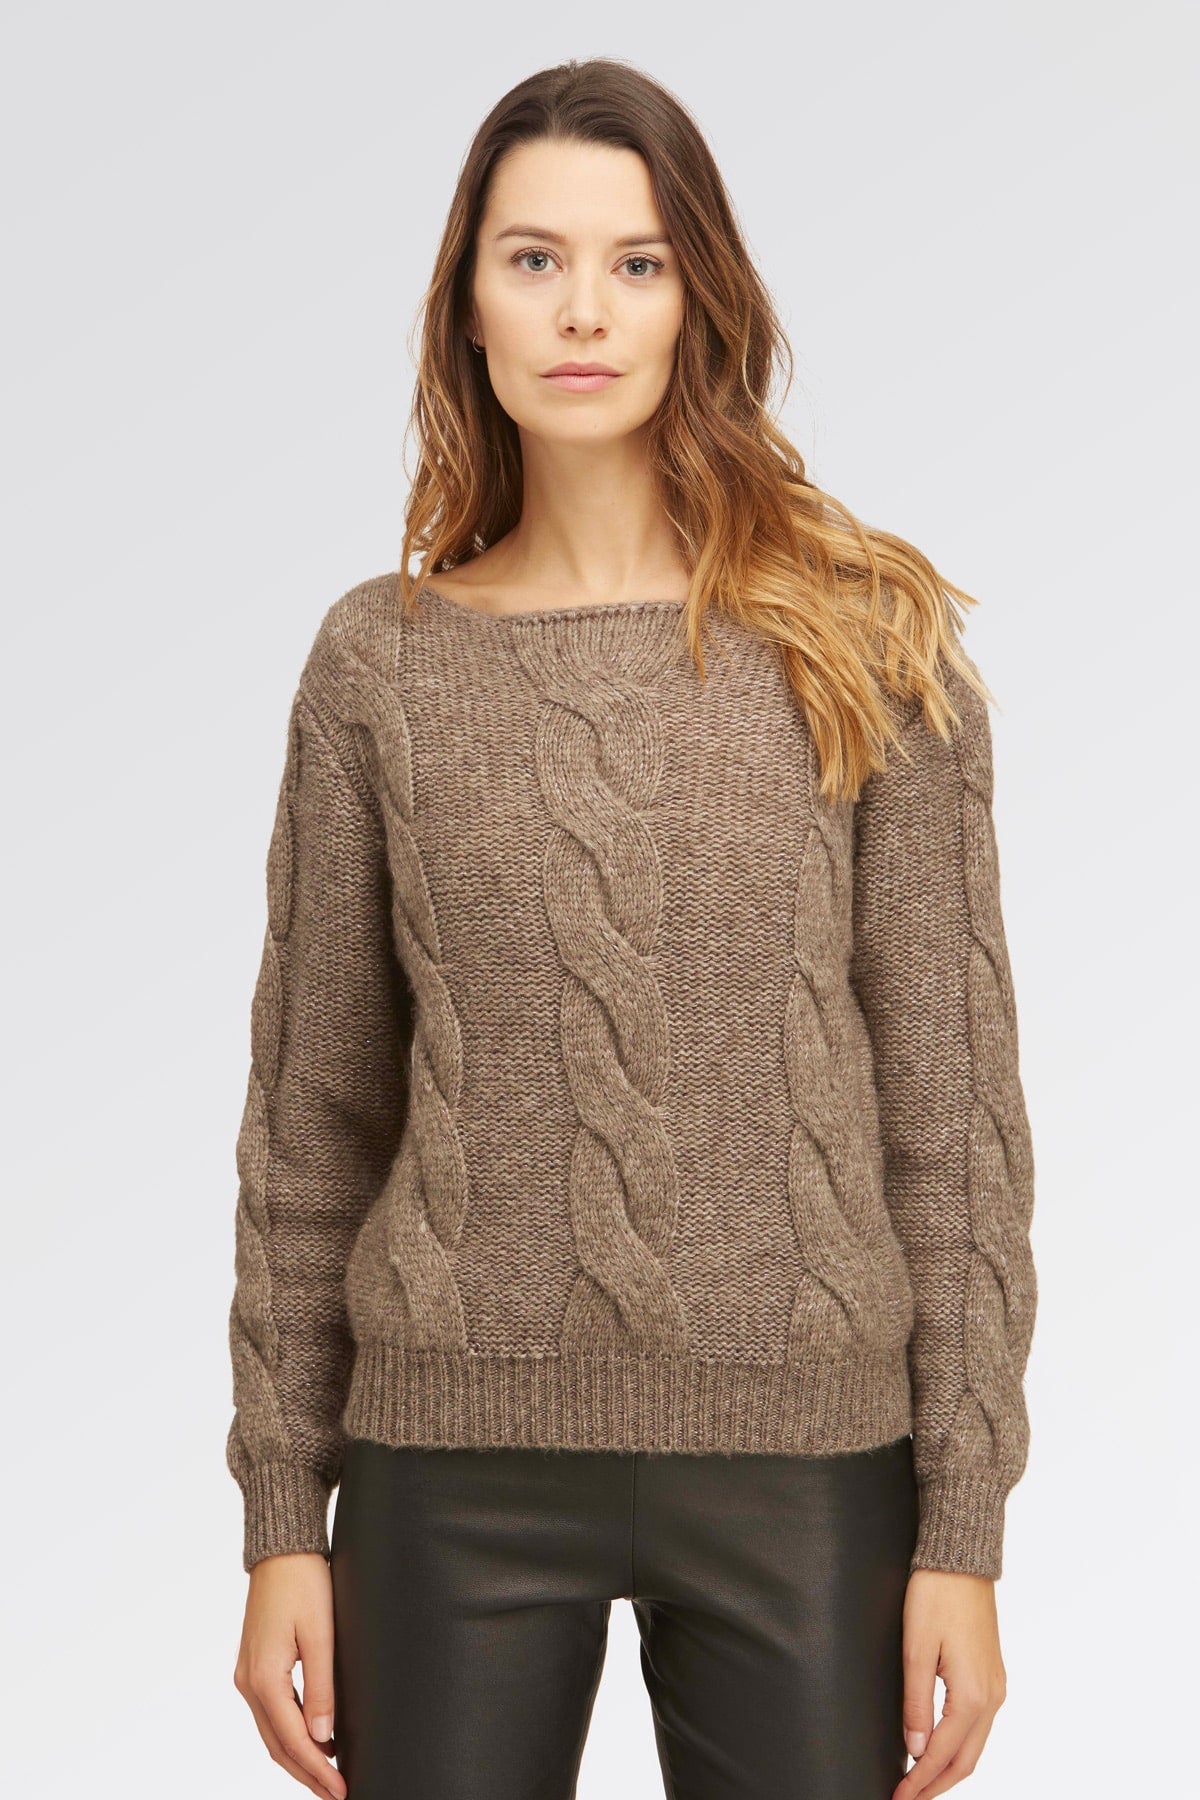 Pulloverpullover – Damen, Herbst/Winter – Wollmischung | Brunella Gori